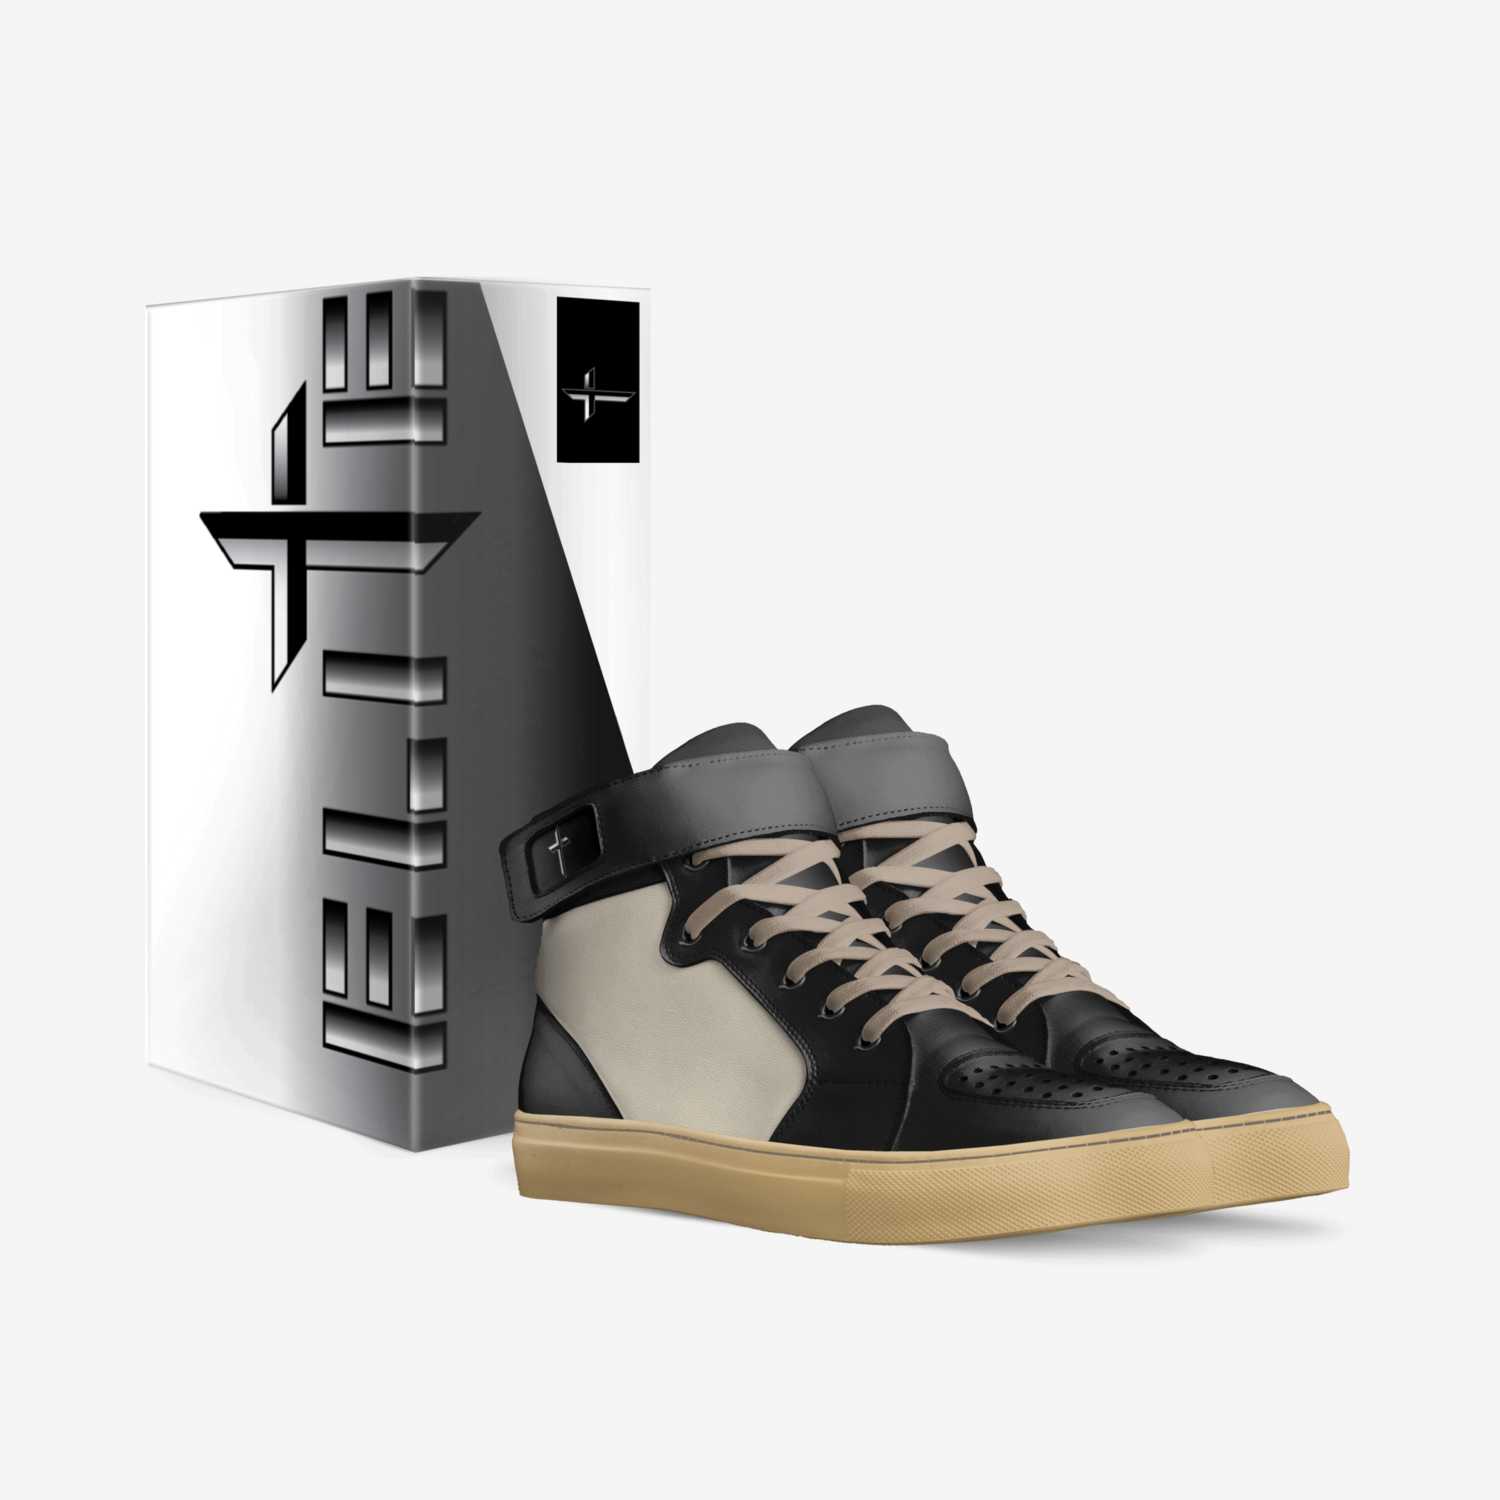 E.L.I.T.E.S. custom made in Italy shoes by Mauricio Cordova | Box view